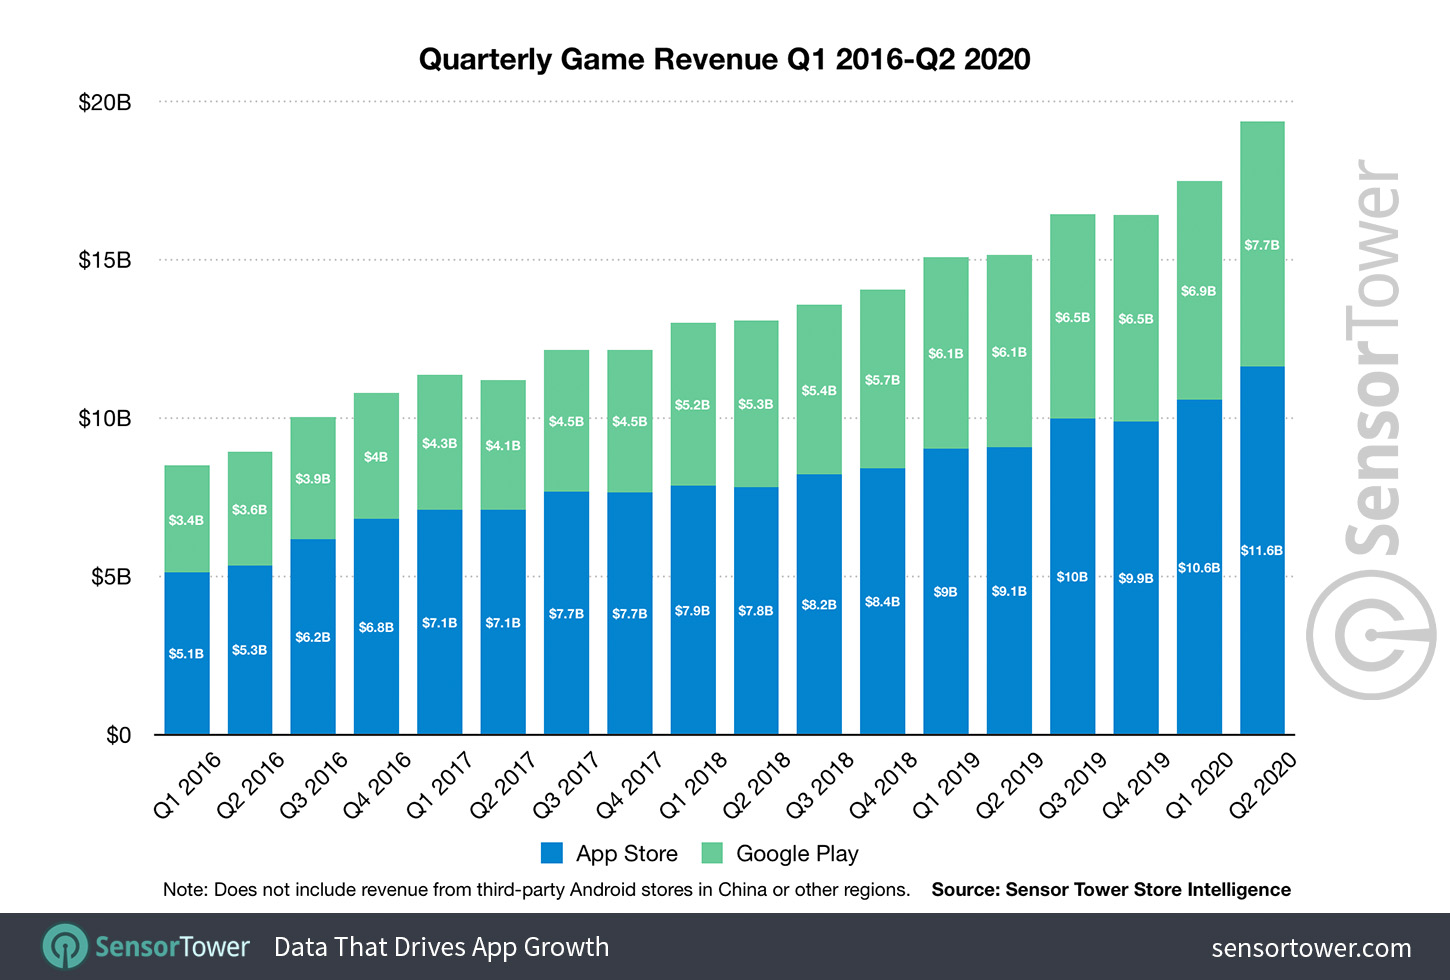 Mobile Game Revenue